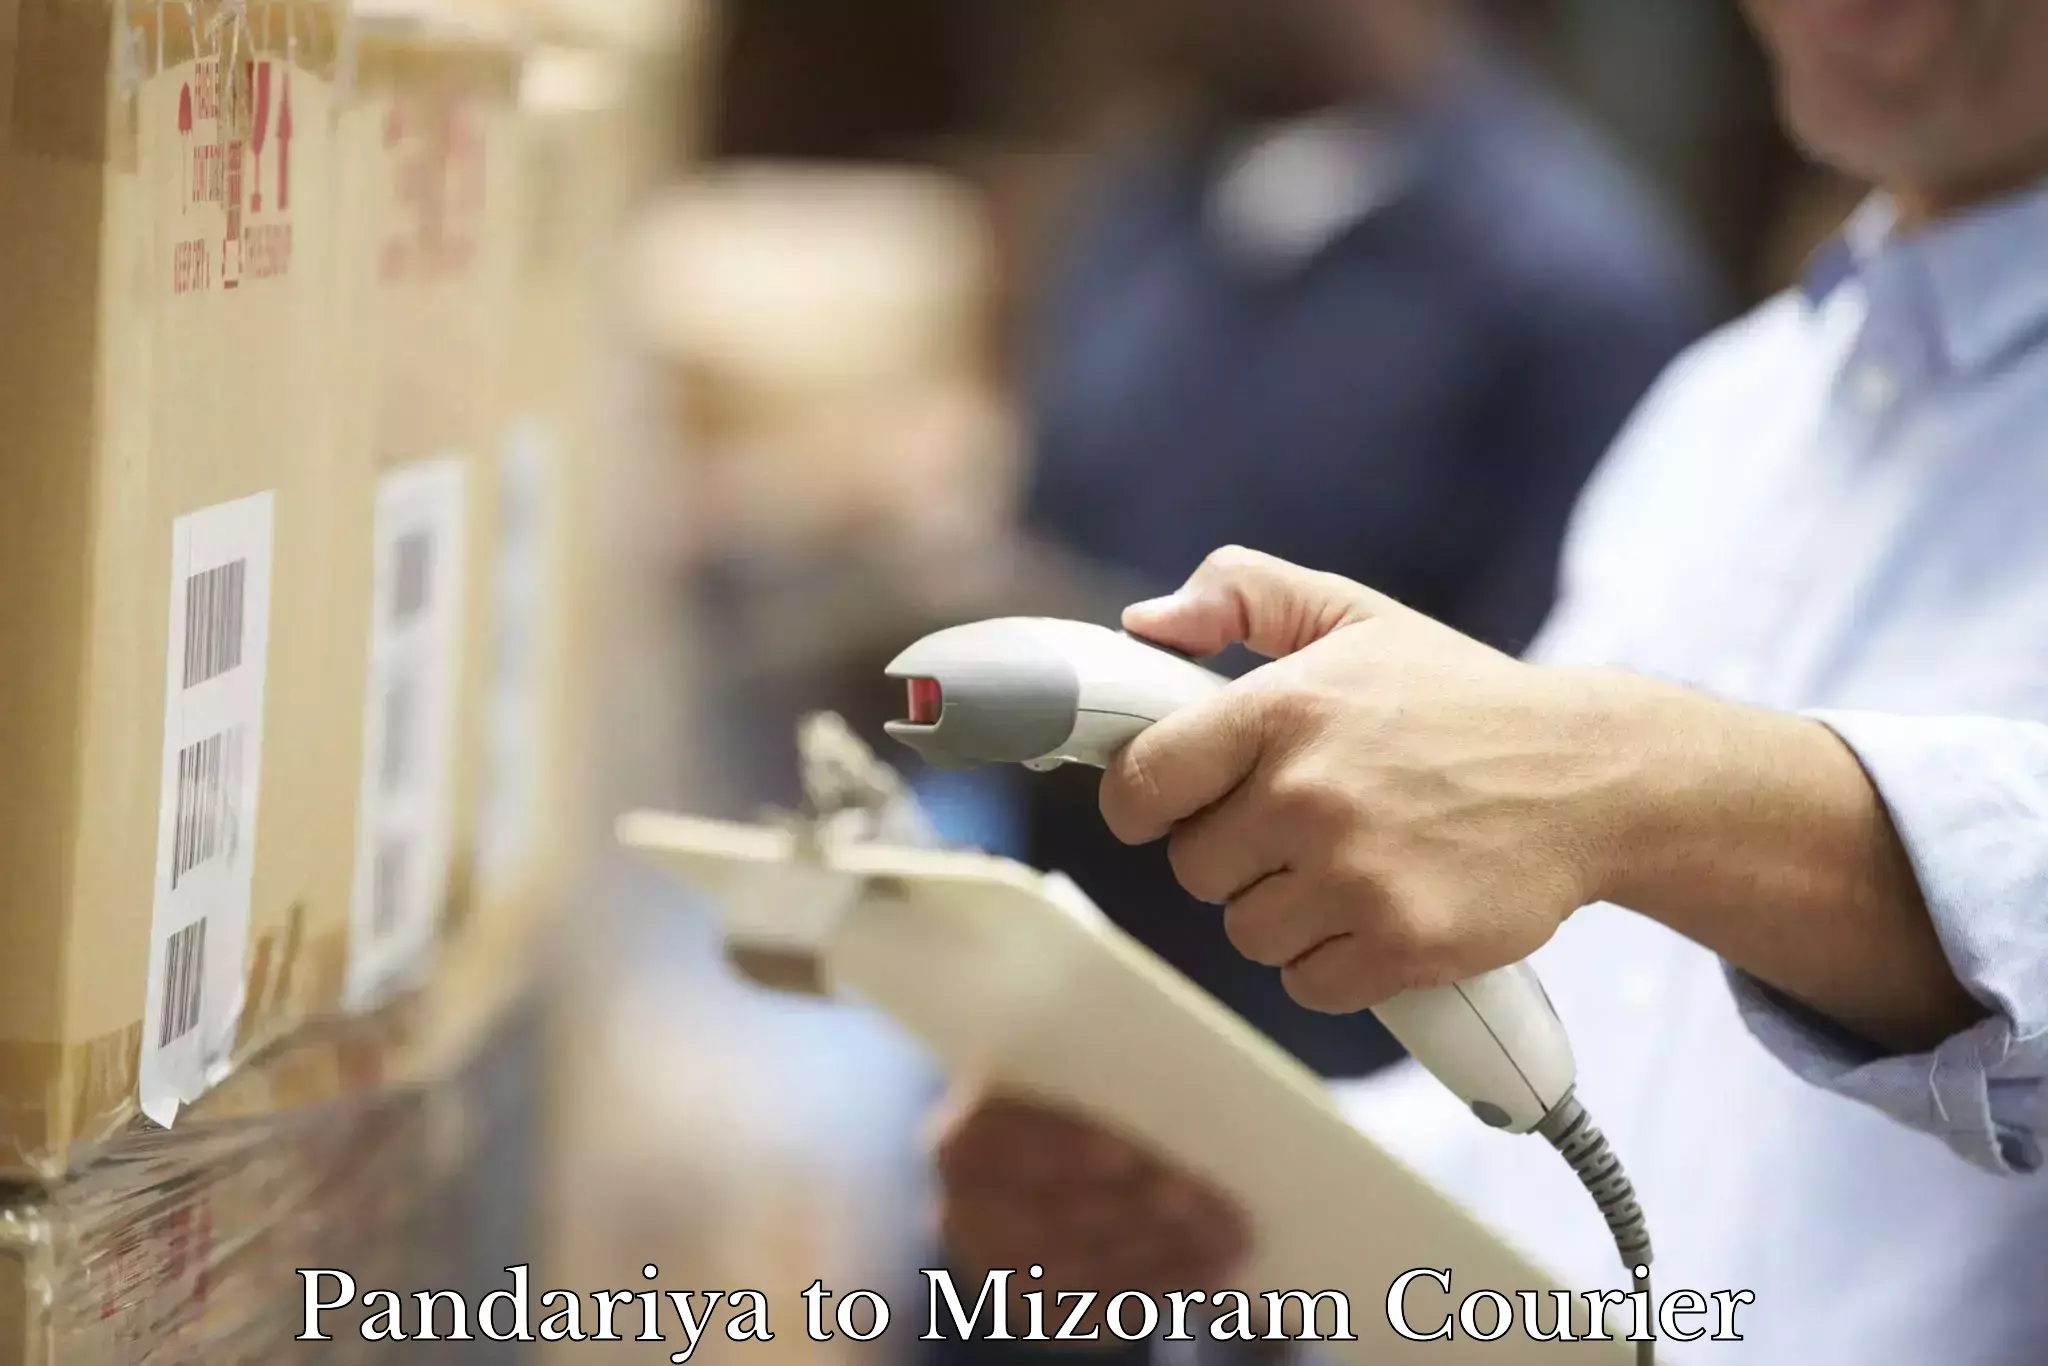 Professional courier handling Pandariya to Mizoram